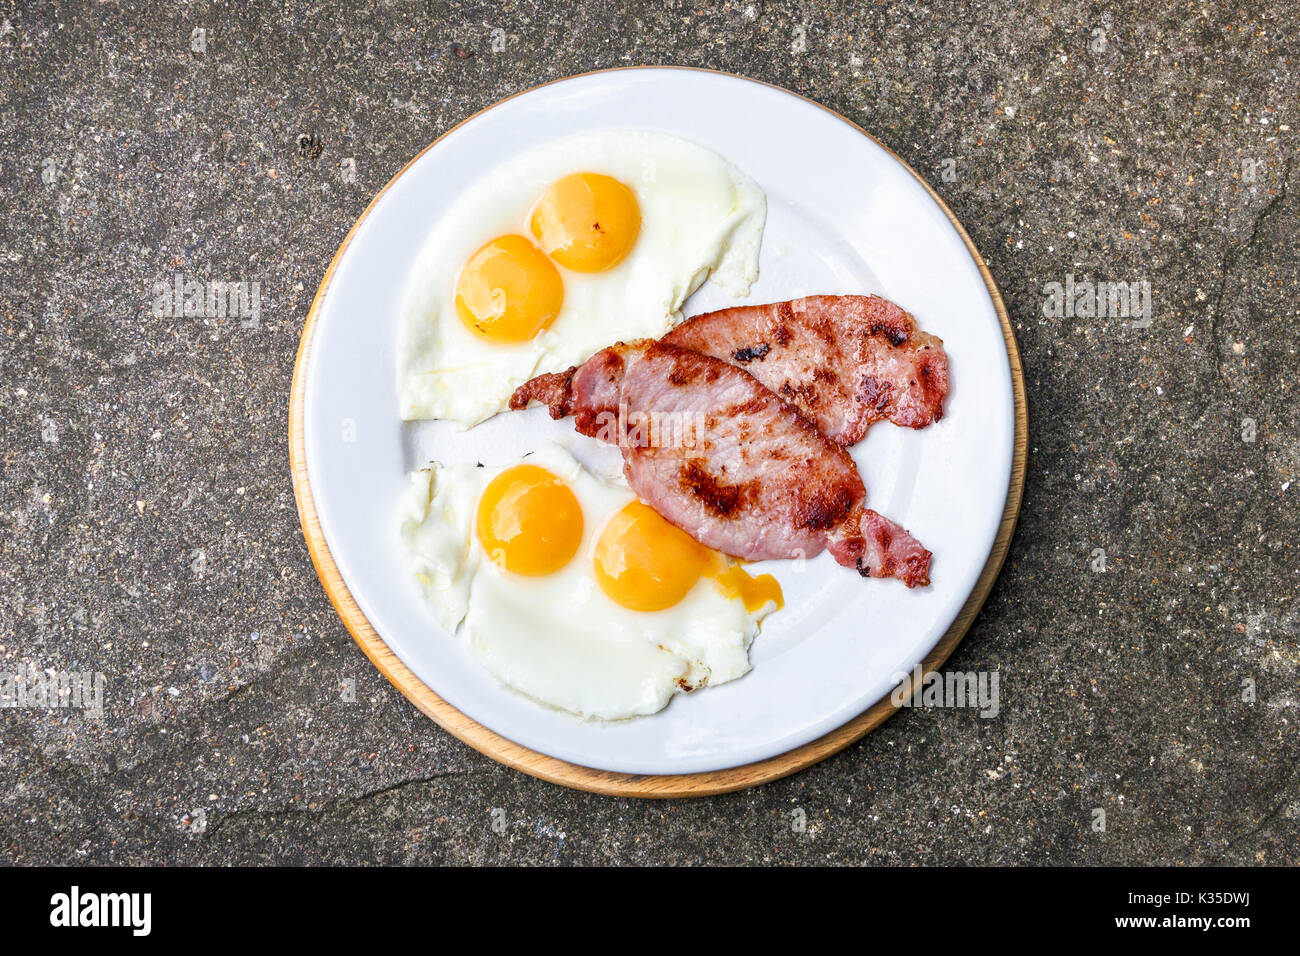 Ein traditionelles englisches Frühstück mit zwei Eier (Eigelb) mit Doppelbett und Speck auf einer weißen Platte gegen einen Stein oder Granit Hintergrund Stockfoto